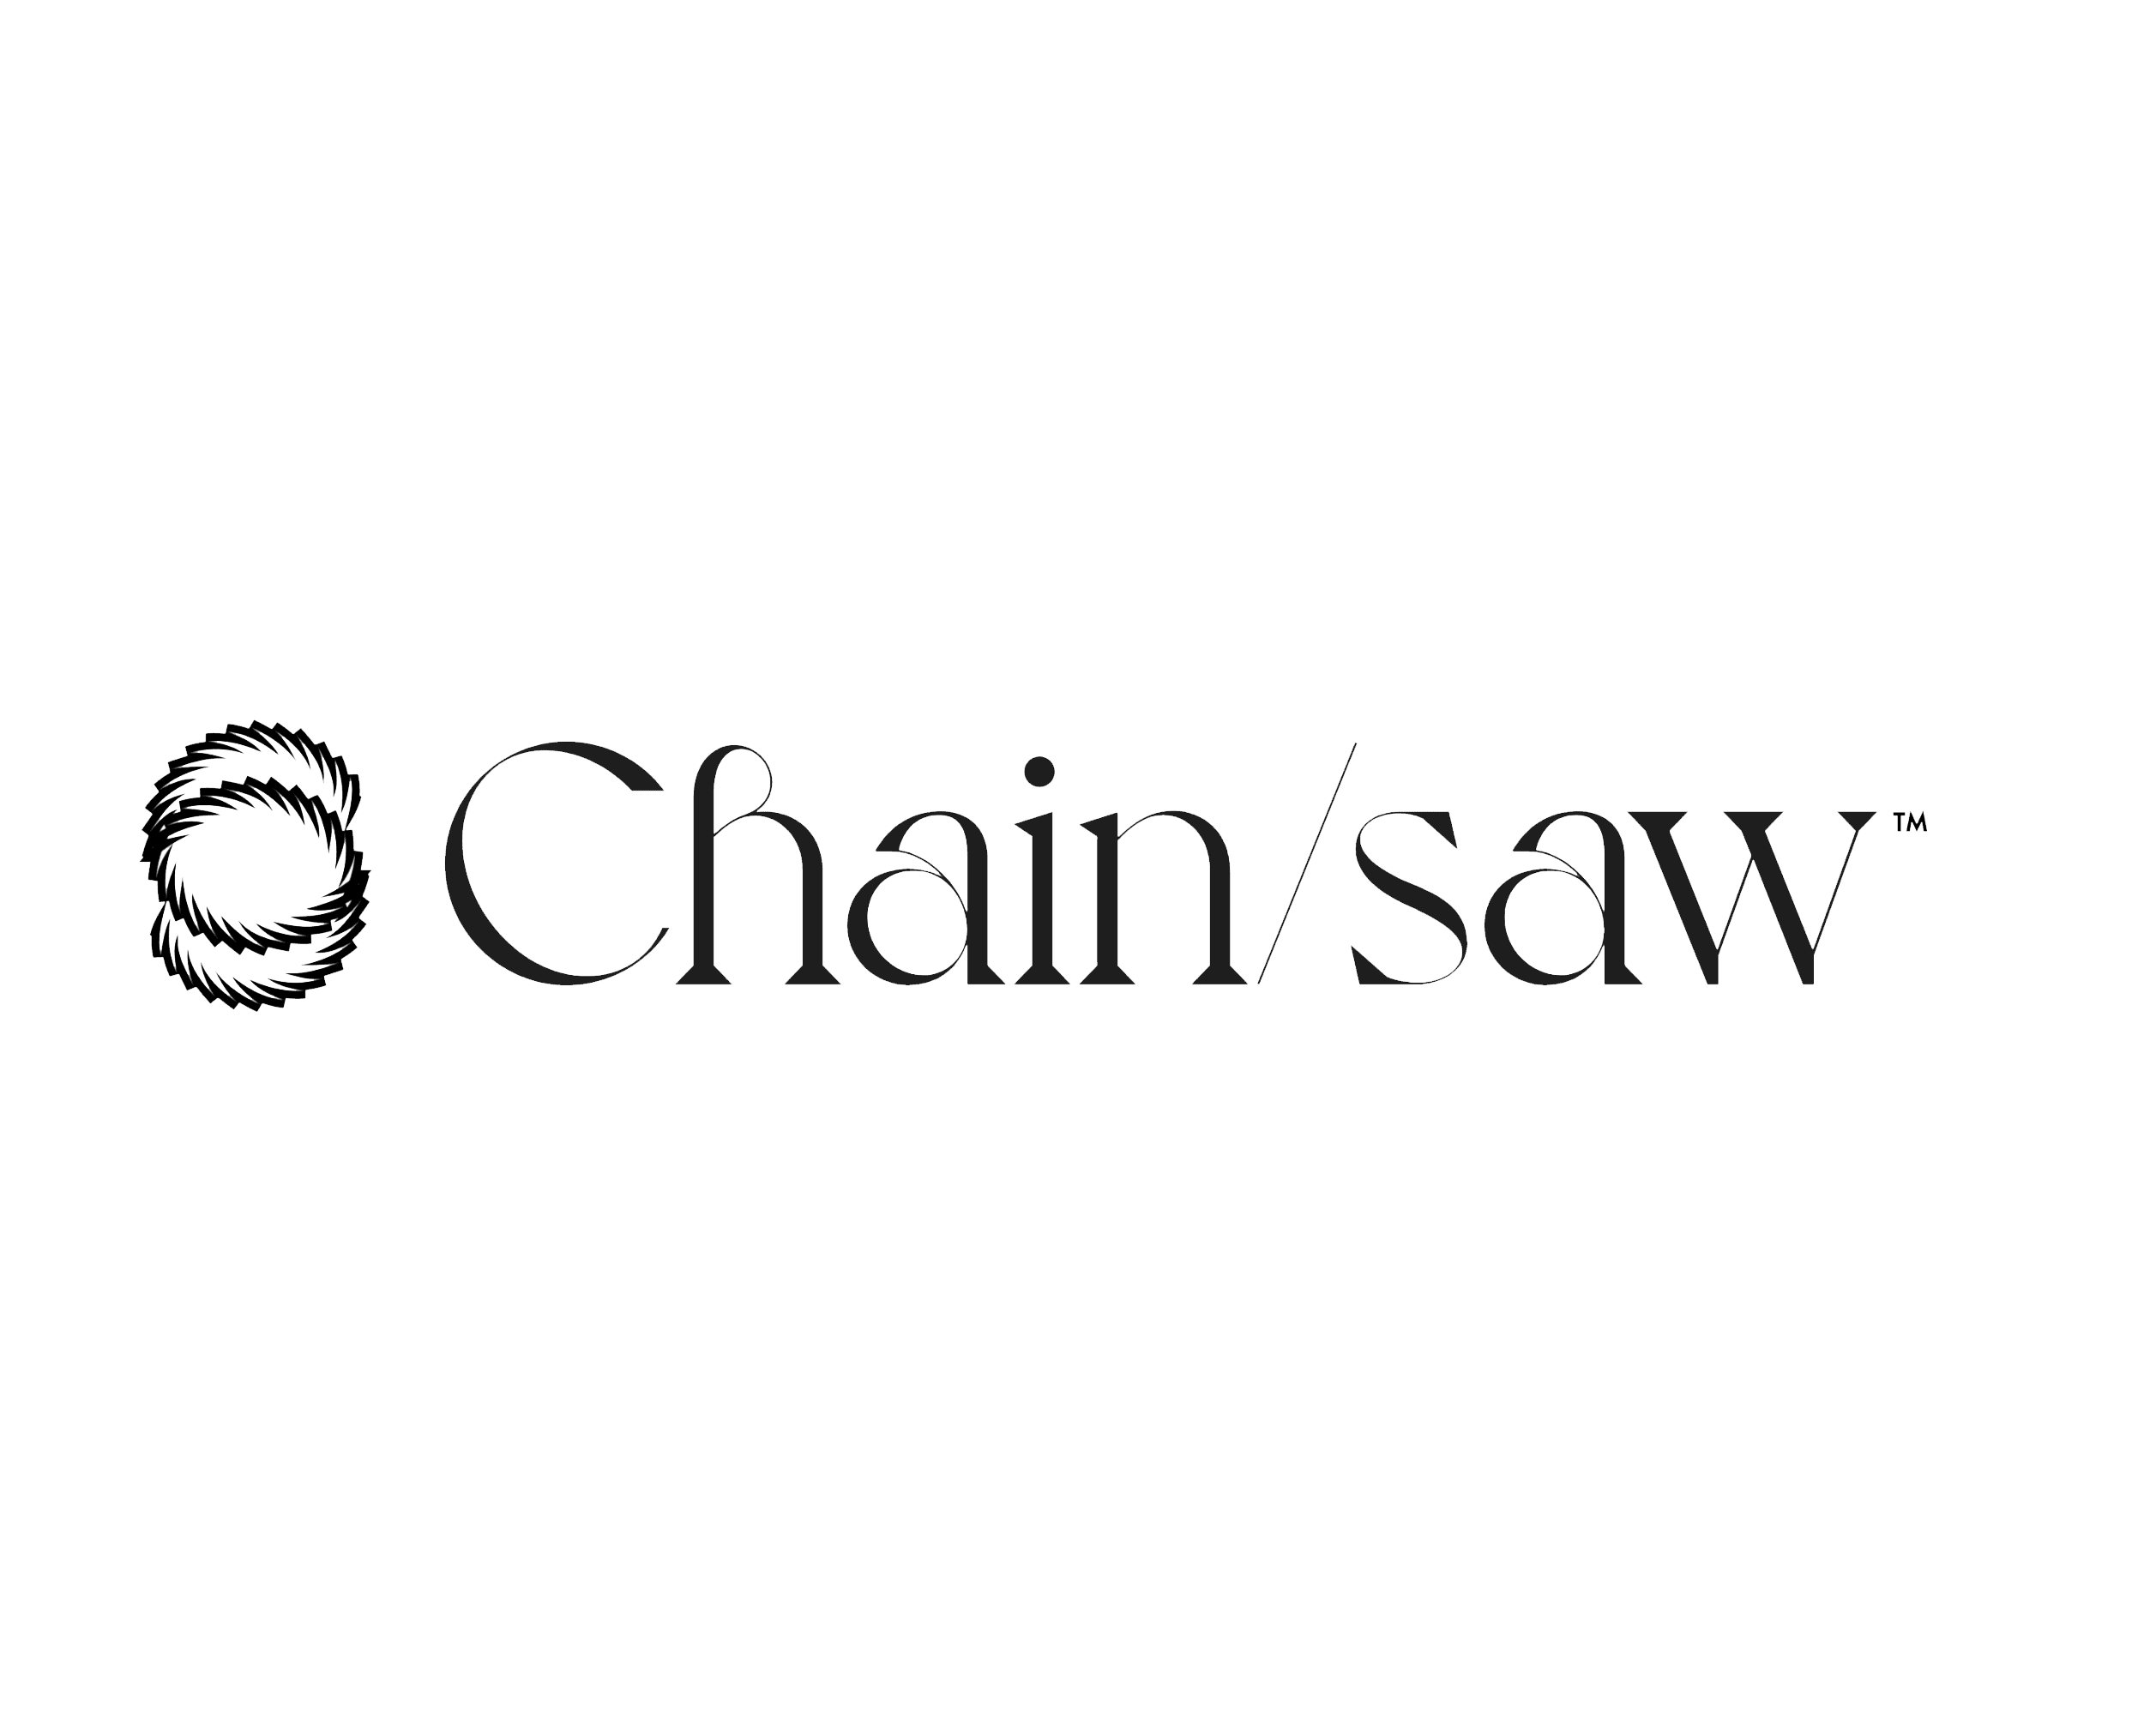 ChainSaw 배너